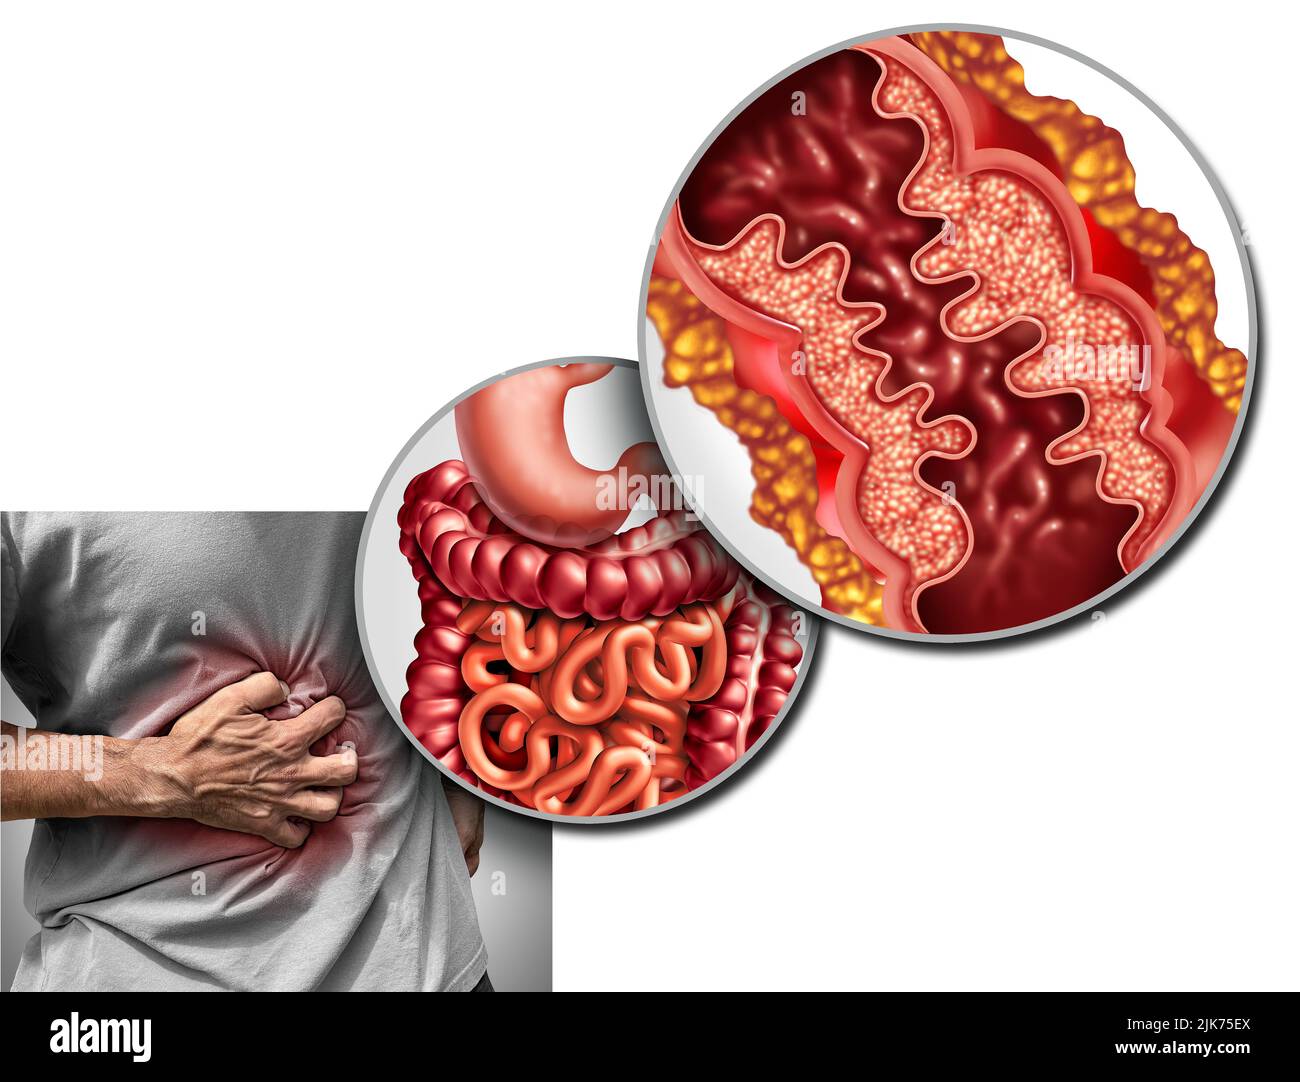 Morbus Crohn Schmerzen und Morbus Crohn Krankheit oder Morbus Crohn als medizinisches Konzept mit Nahaufnahme eines menschlichen Darms mit Entzündung. Stockfoto